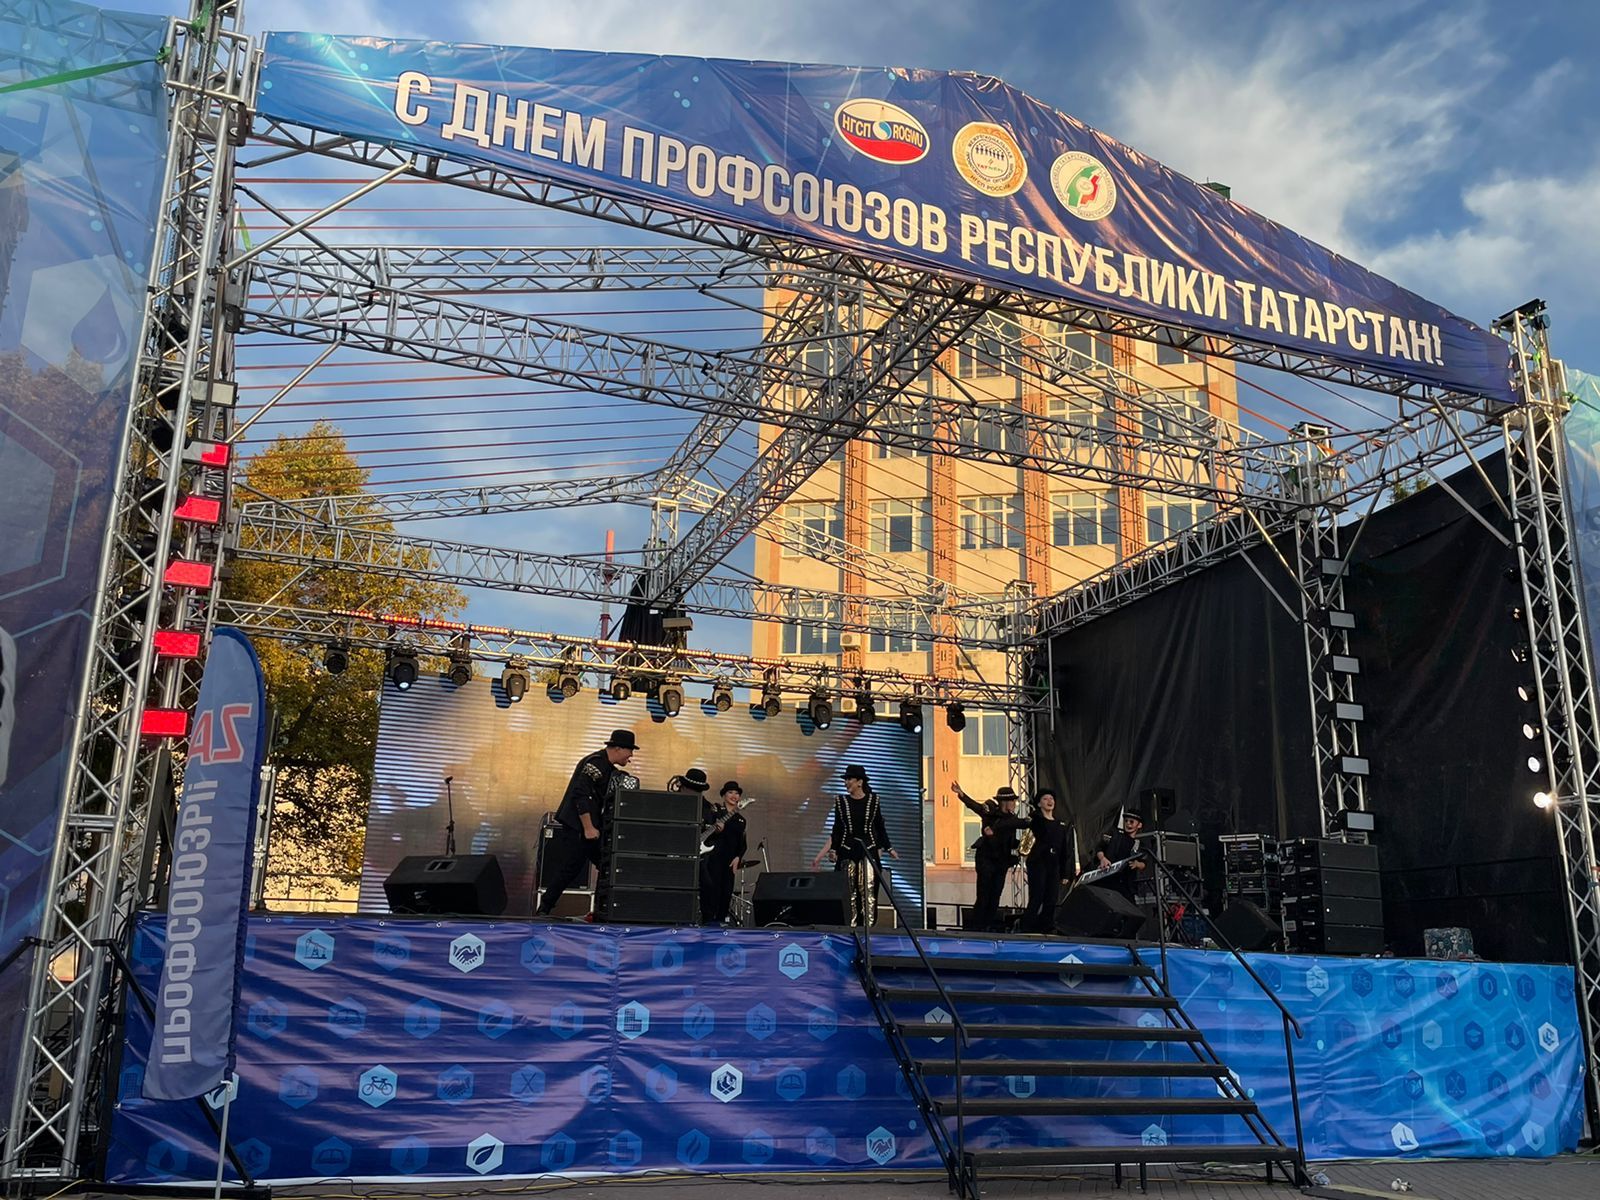 В Бугульме отметили День профсоюзов Республики Татарстан